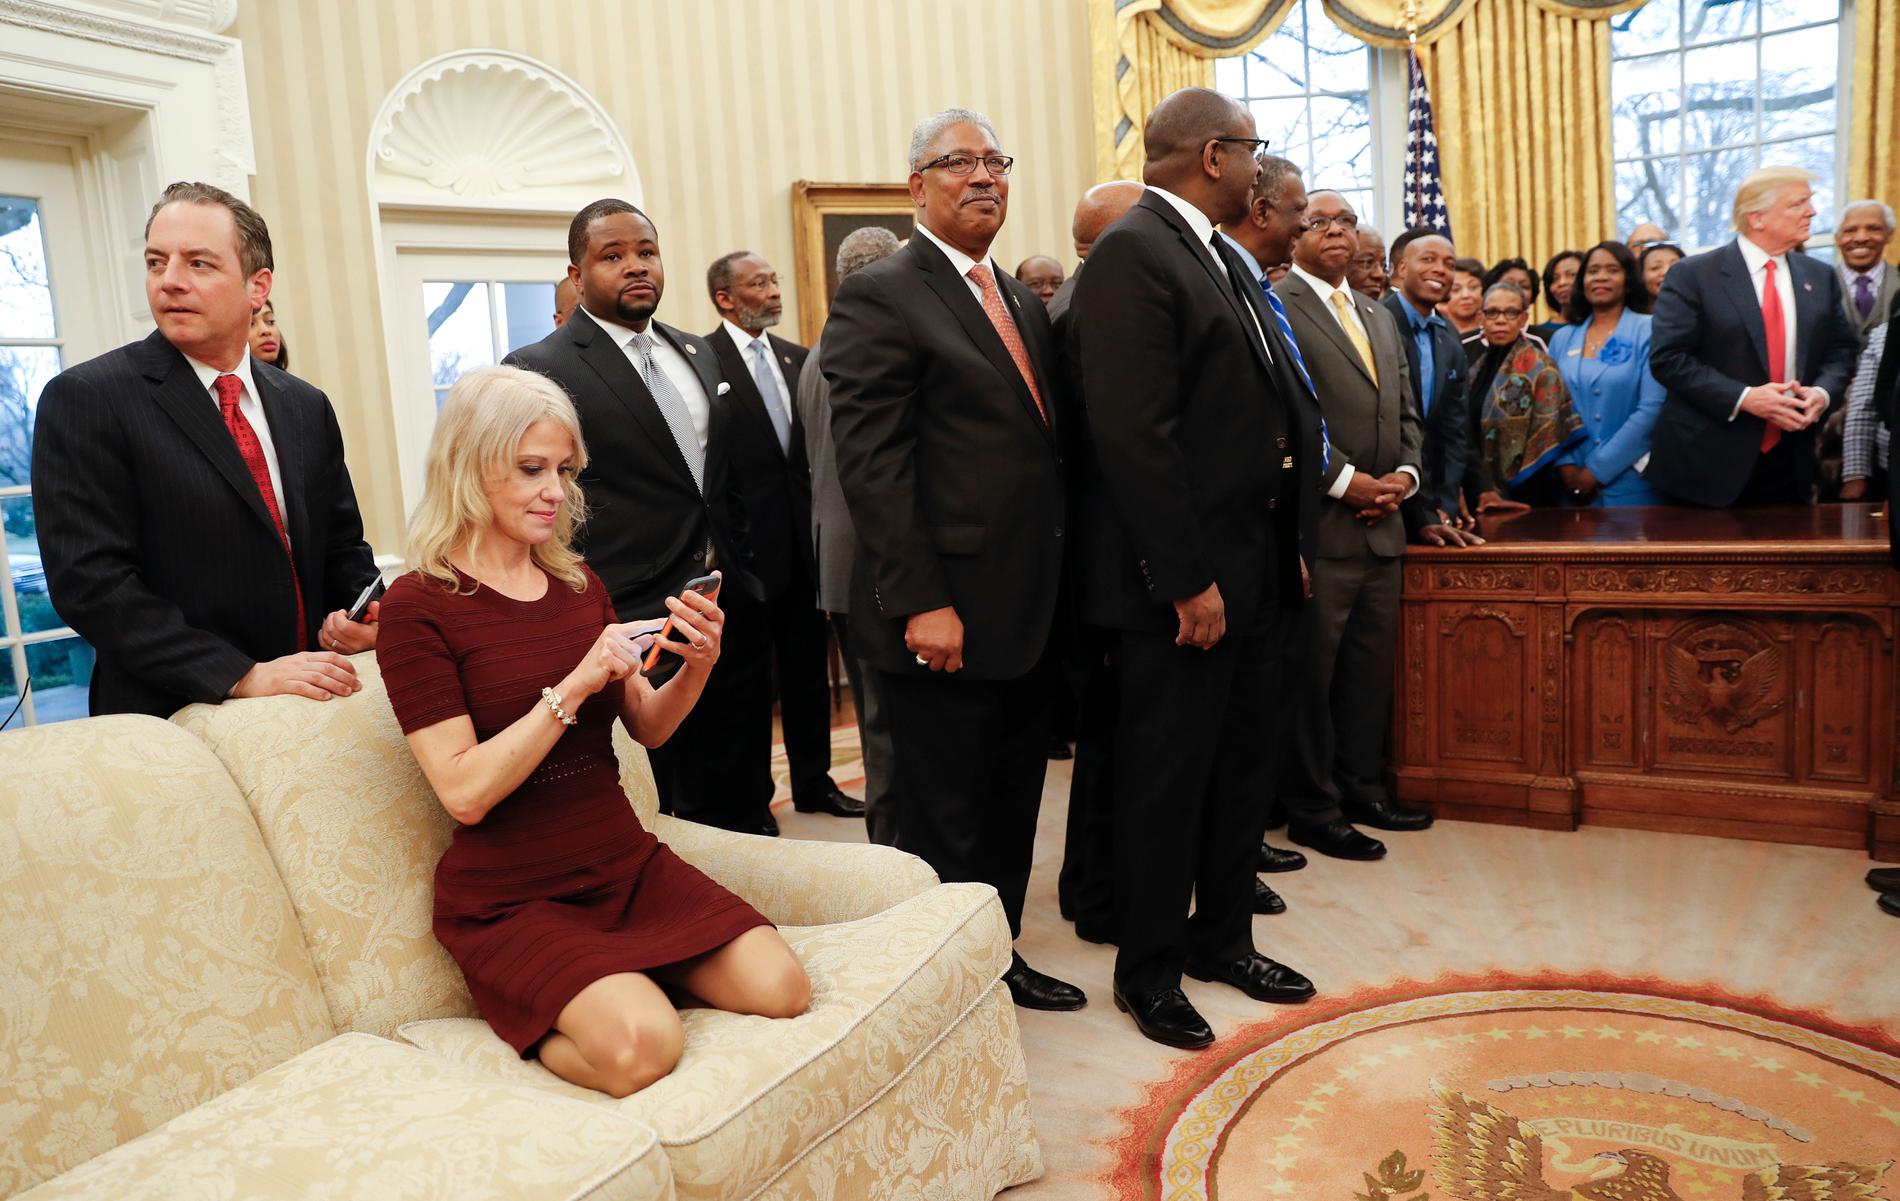 Kellyann Conway i soffan i ovala rummet. Bilden väckte kritik eftersom många såg beteendet som respektlöst. Senare förklarade Conway att hon satt så för att kunna ta en bra bild. 